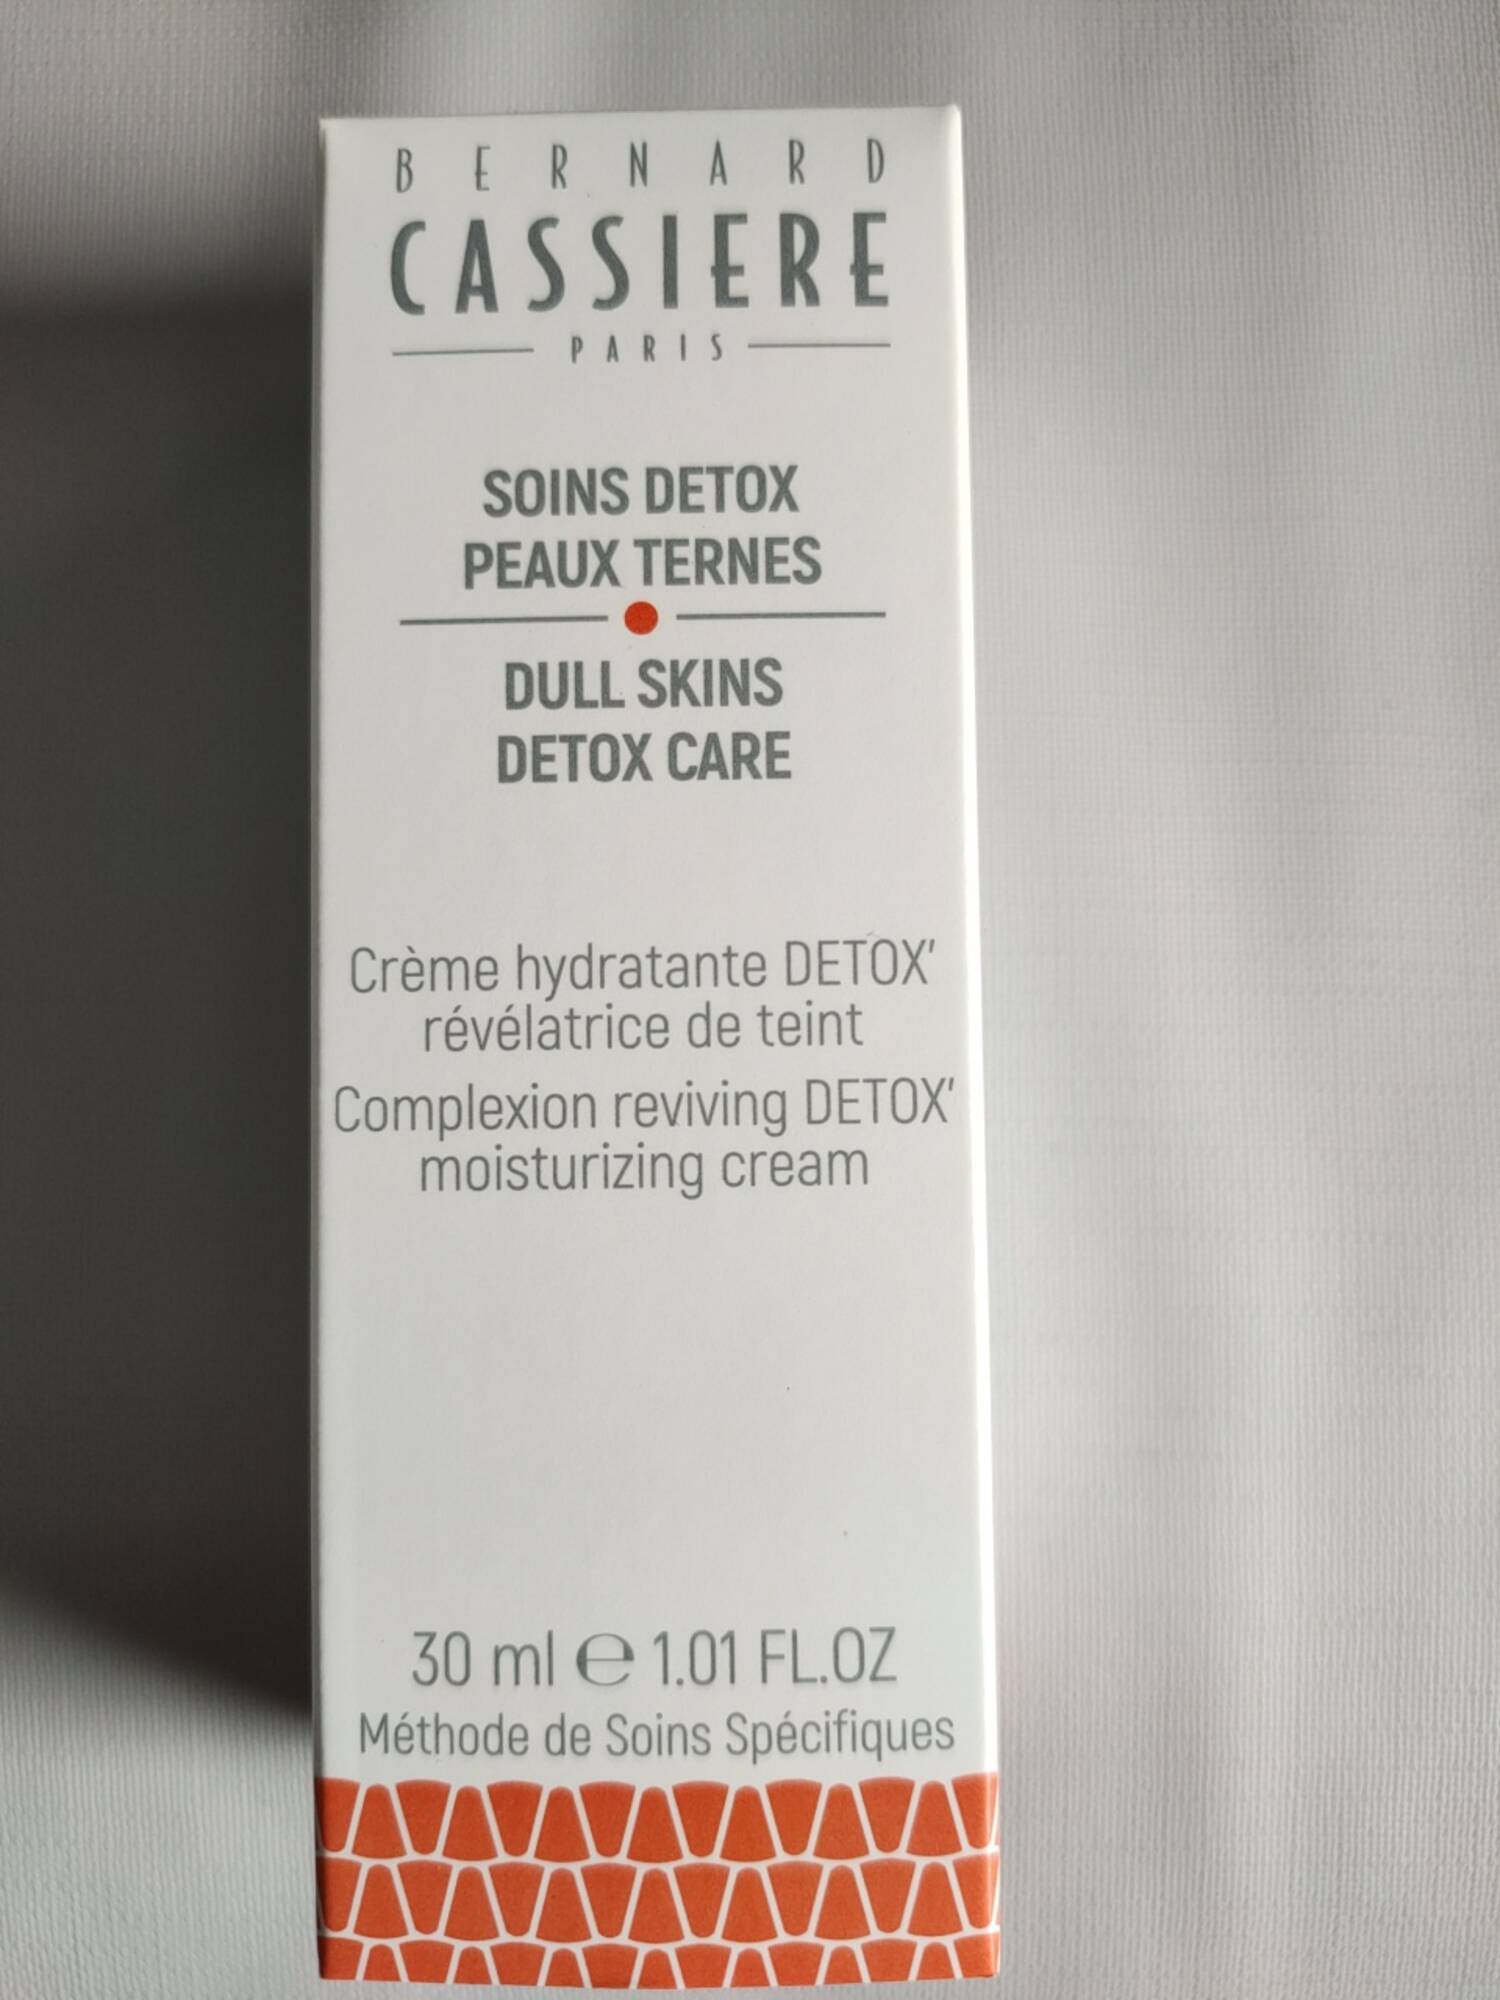 BERNARD CASSIÈRE - Soins detox peaux ternes - Crème hydratante